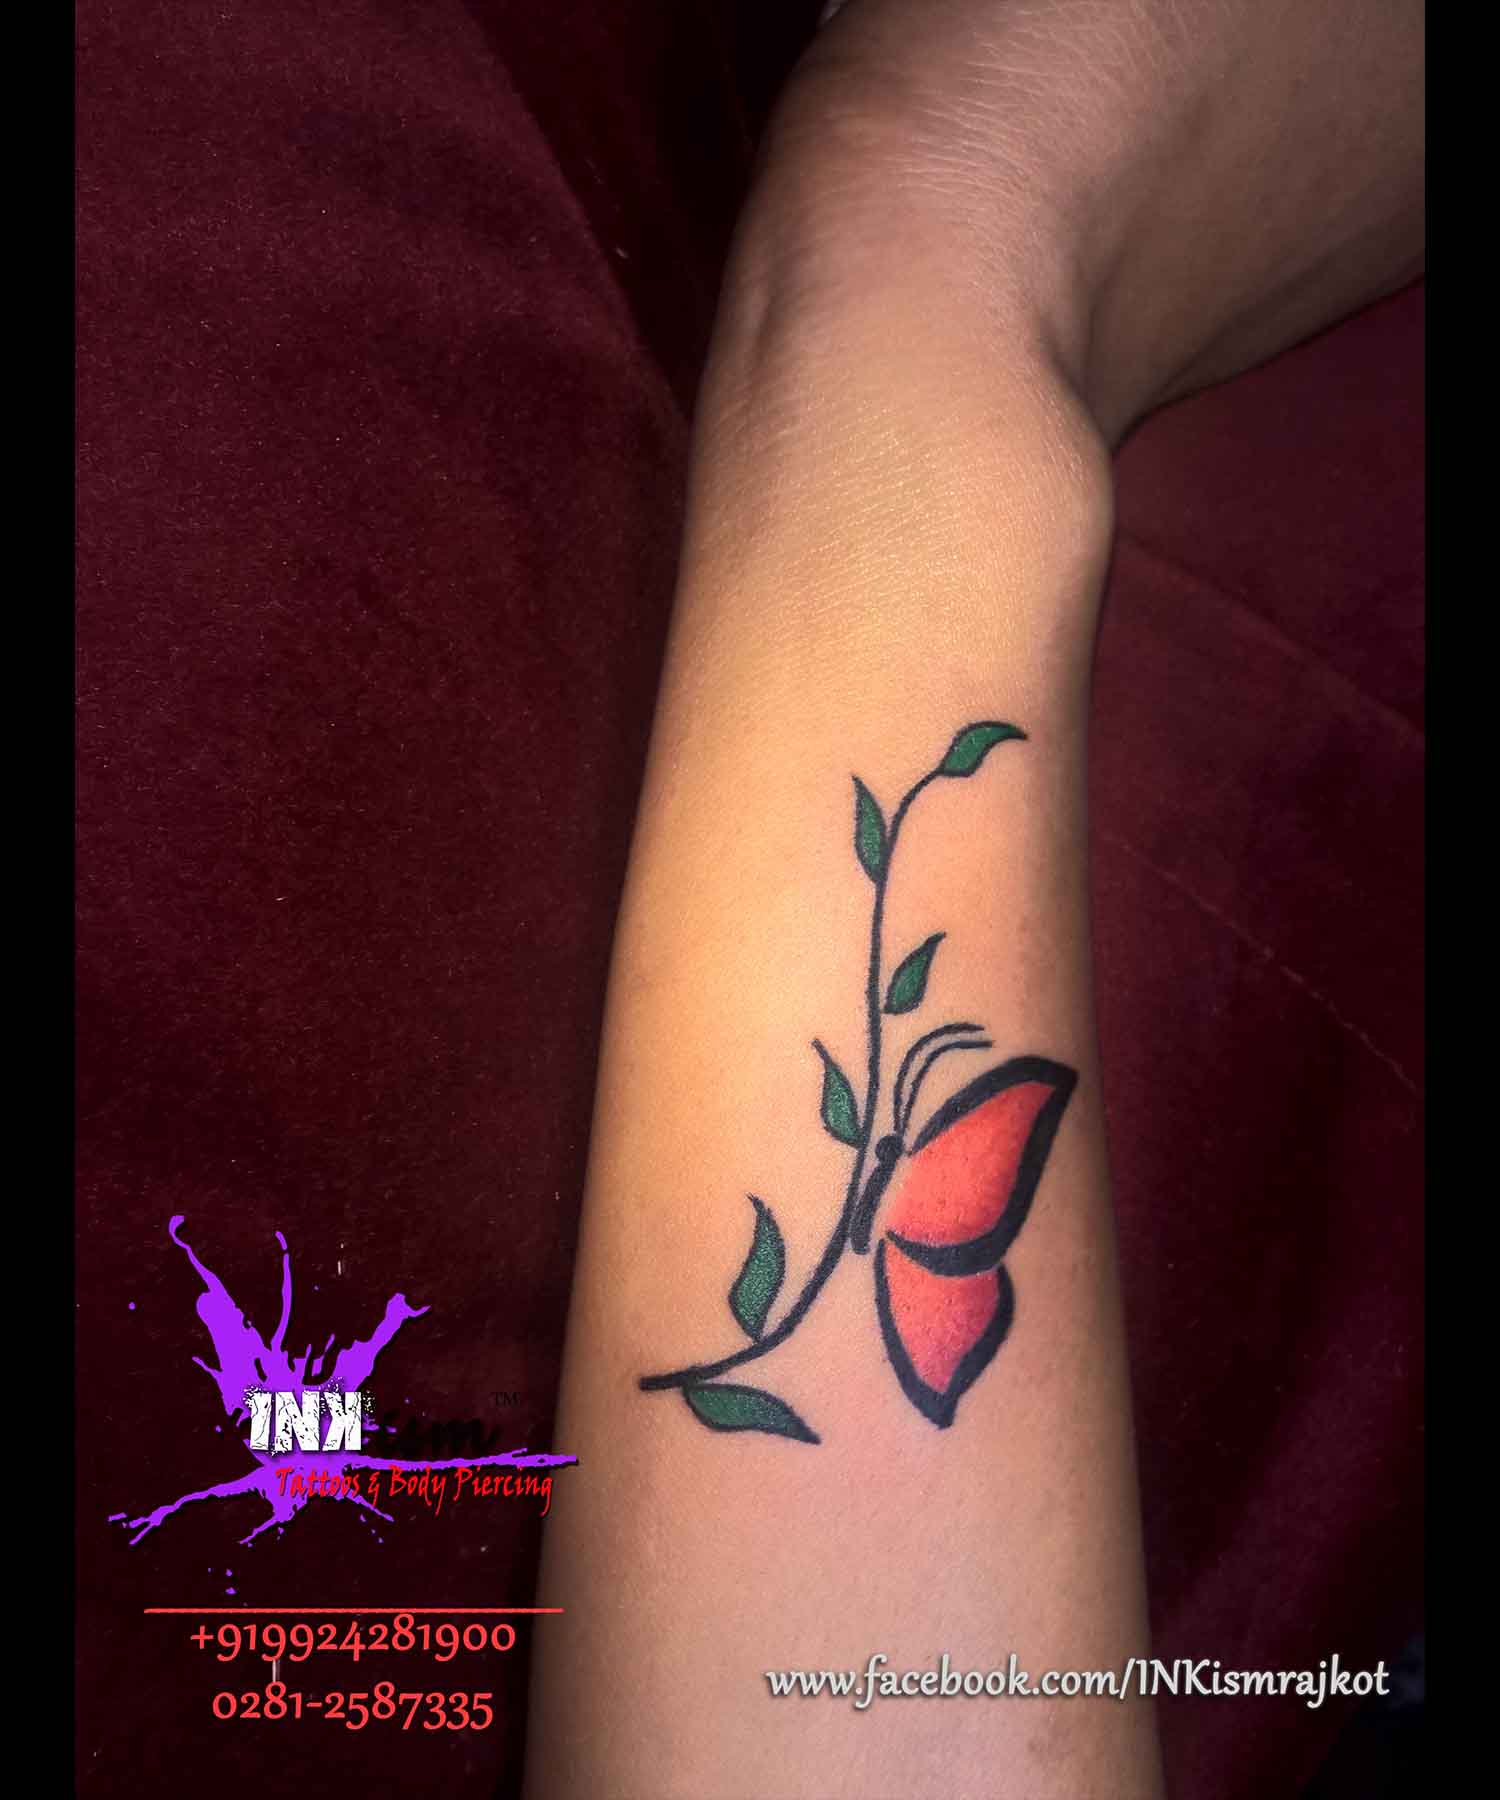 Color butterfly tattoo, butterfly tattoo, wrist tattoo, inkism tattoo and body piercing rajkot gujarat